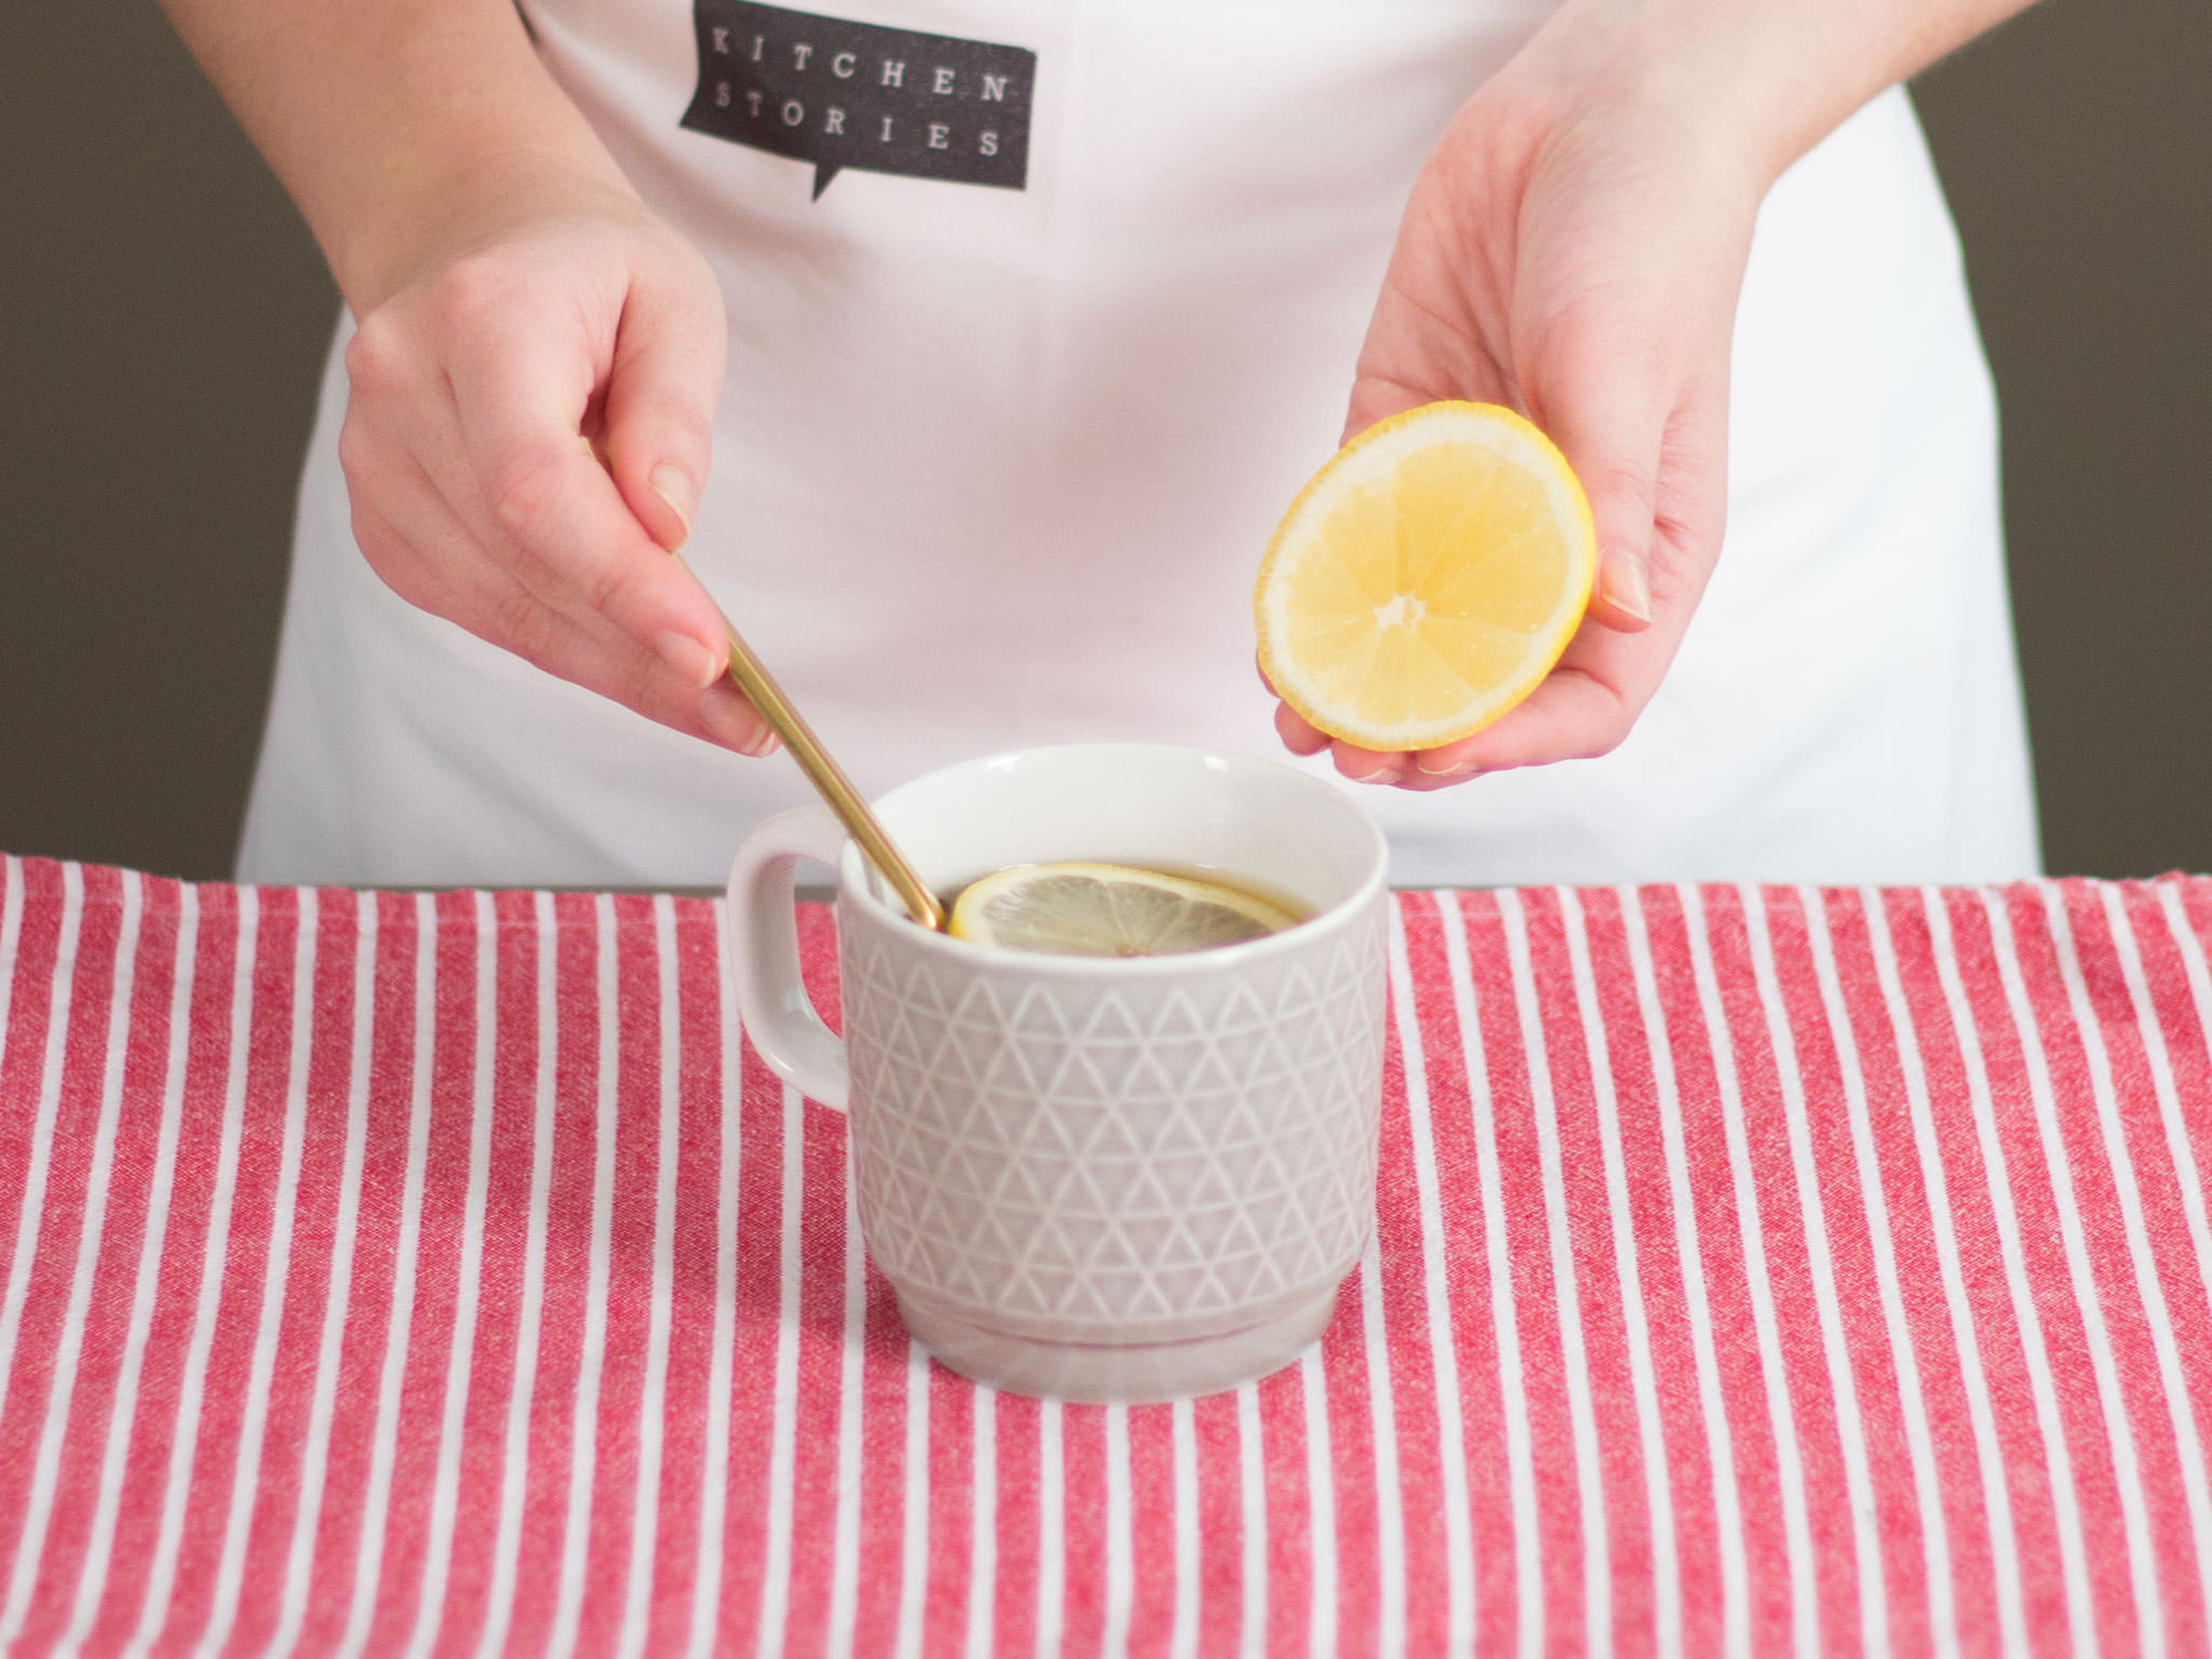 Weinbrand und Zitronenscheiben in die Tasse geben und vorsichtig umrühren.